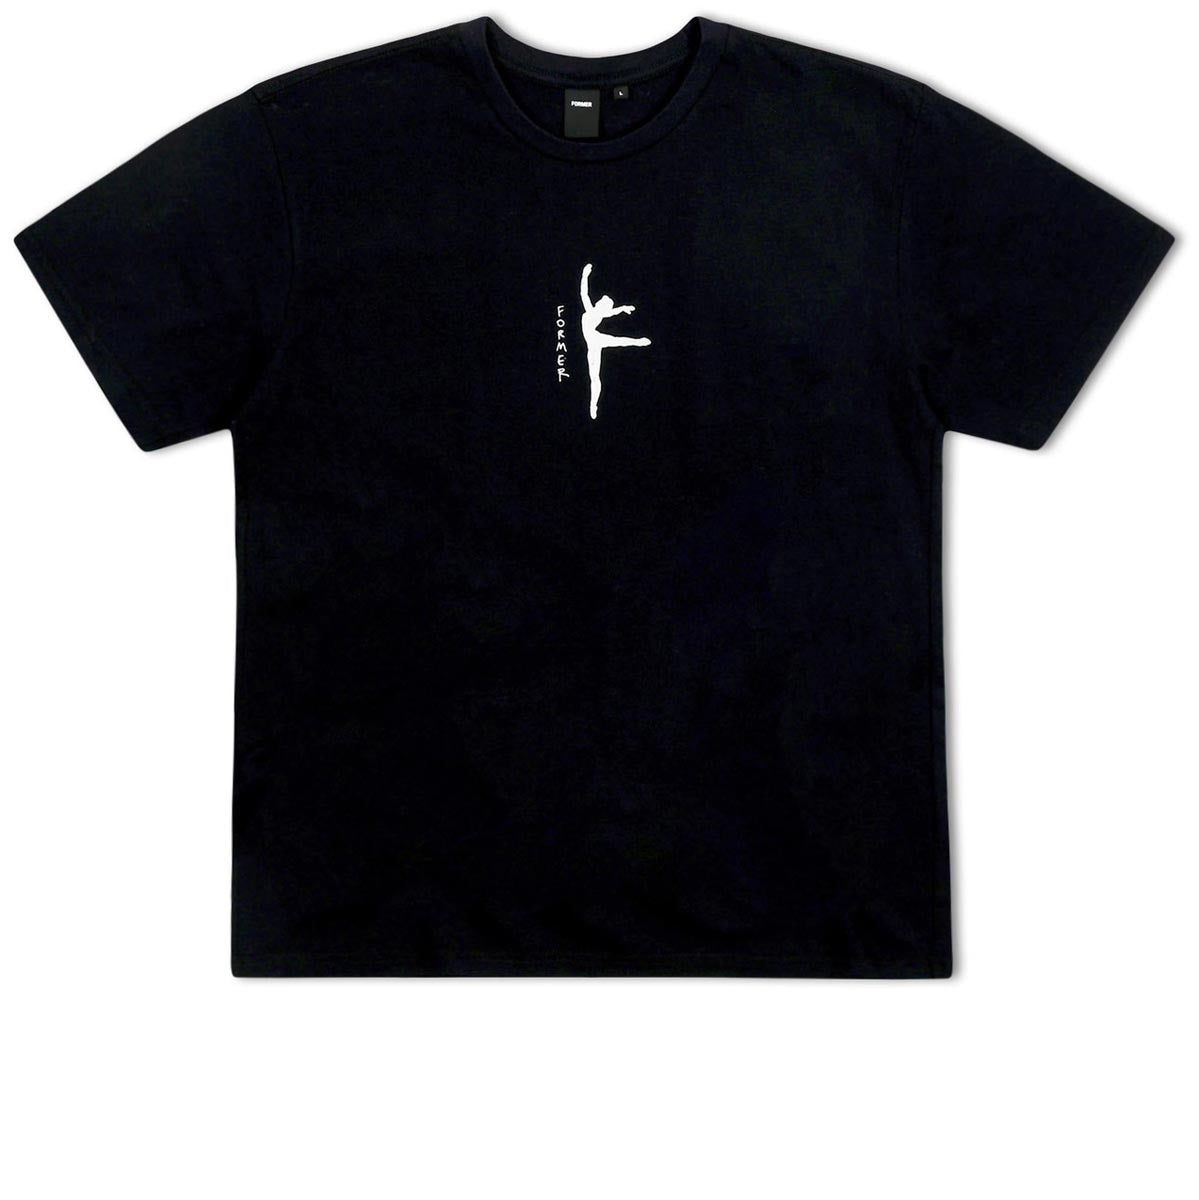 Former Suspension T-Shirt - Black image 1